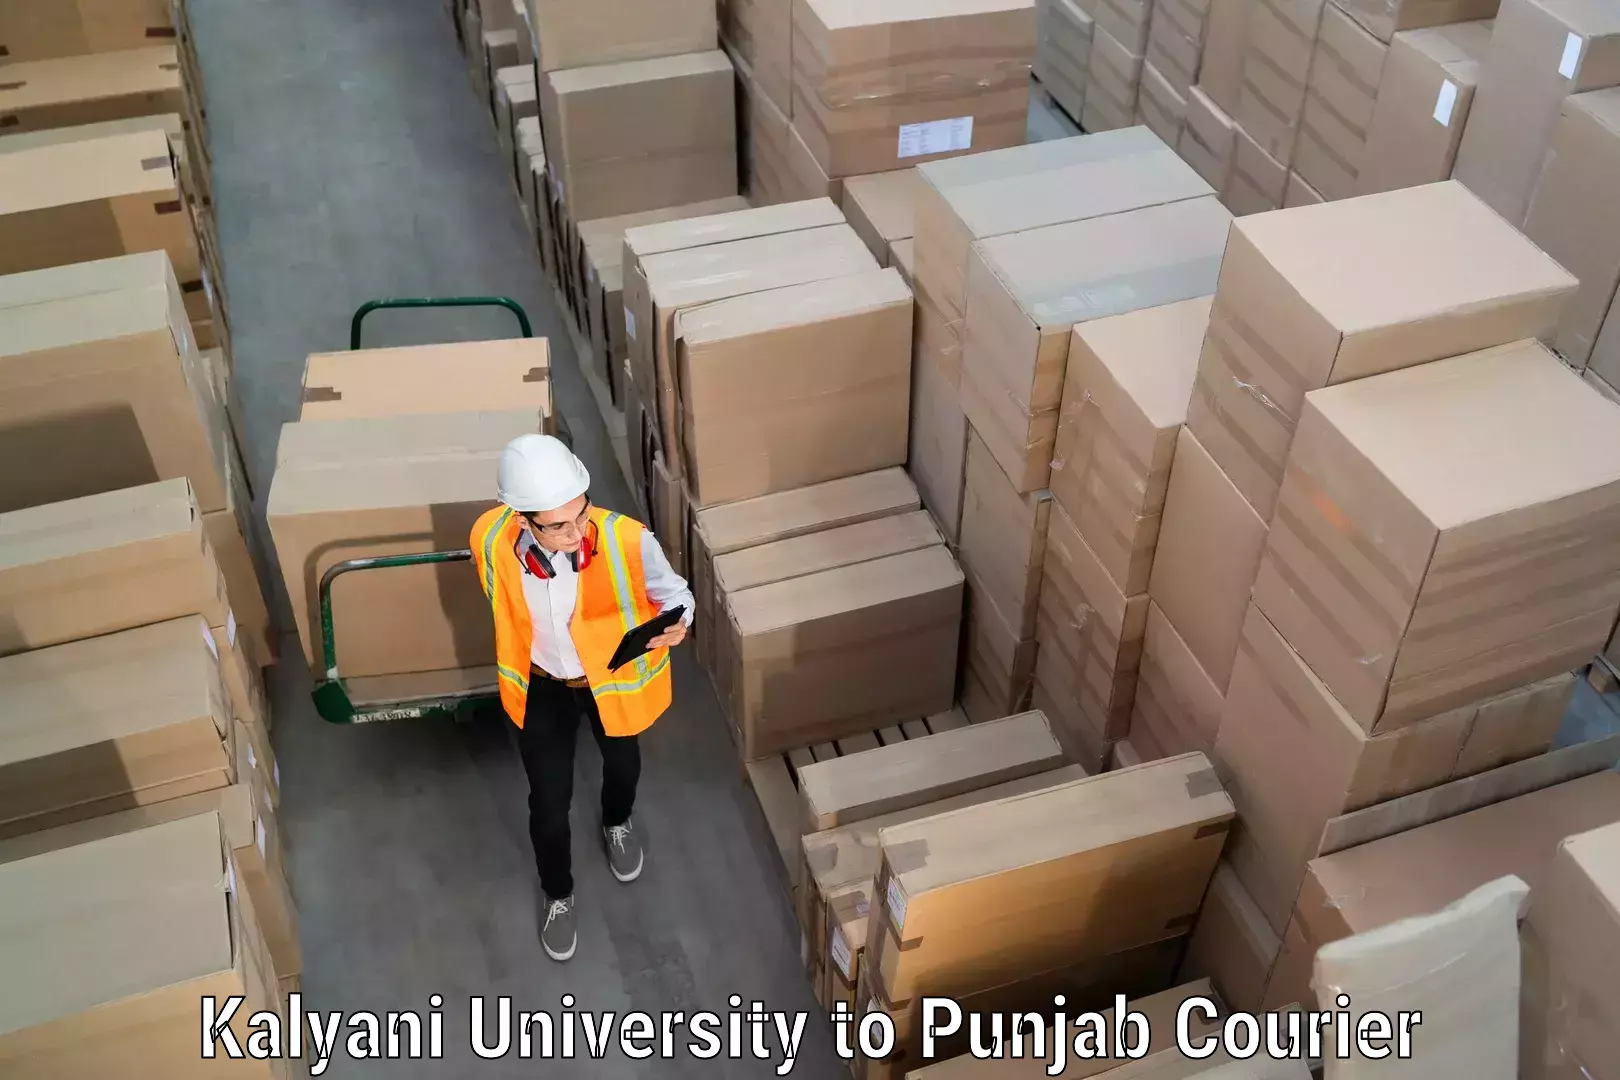 Professional goods transport in Kalyani University to Punjab